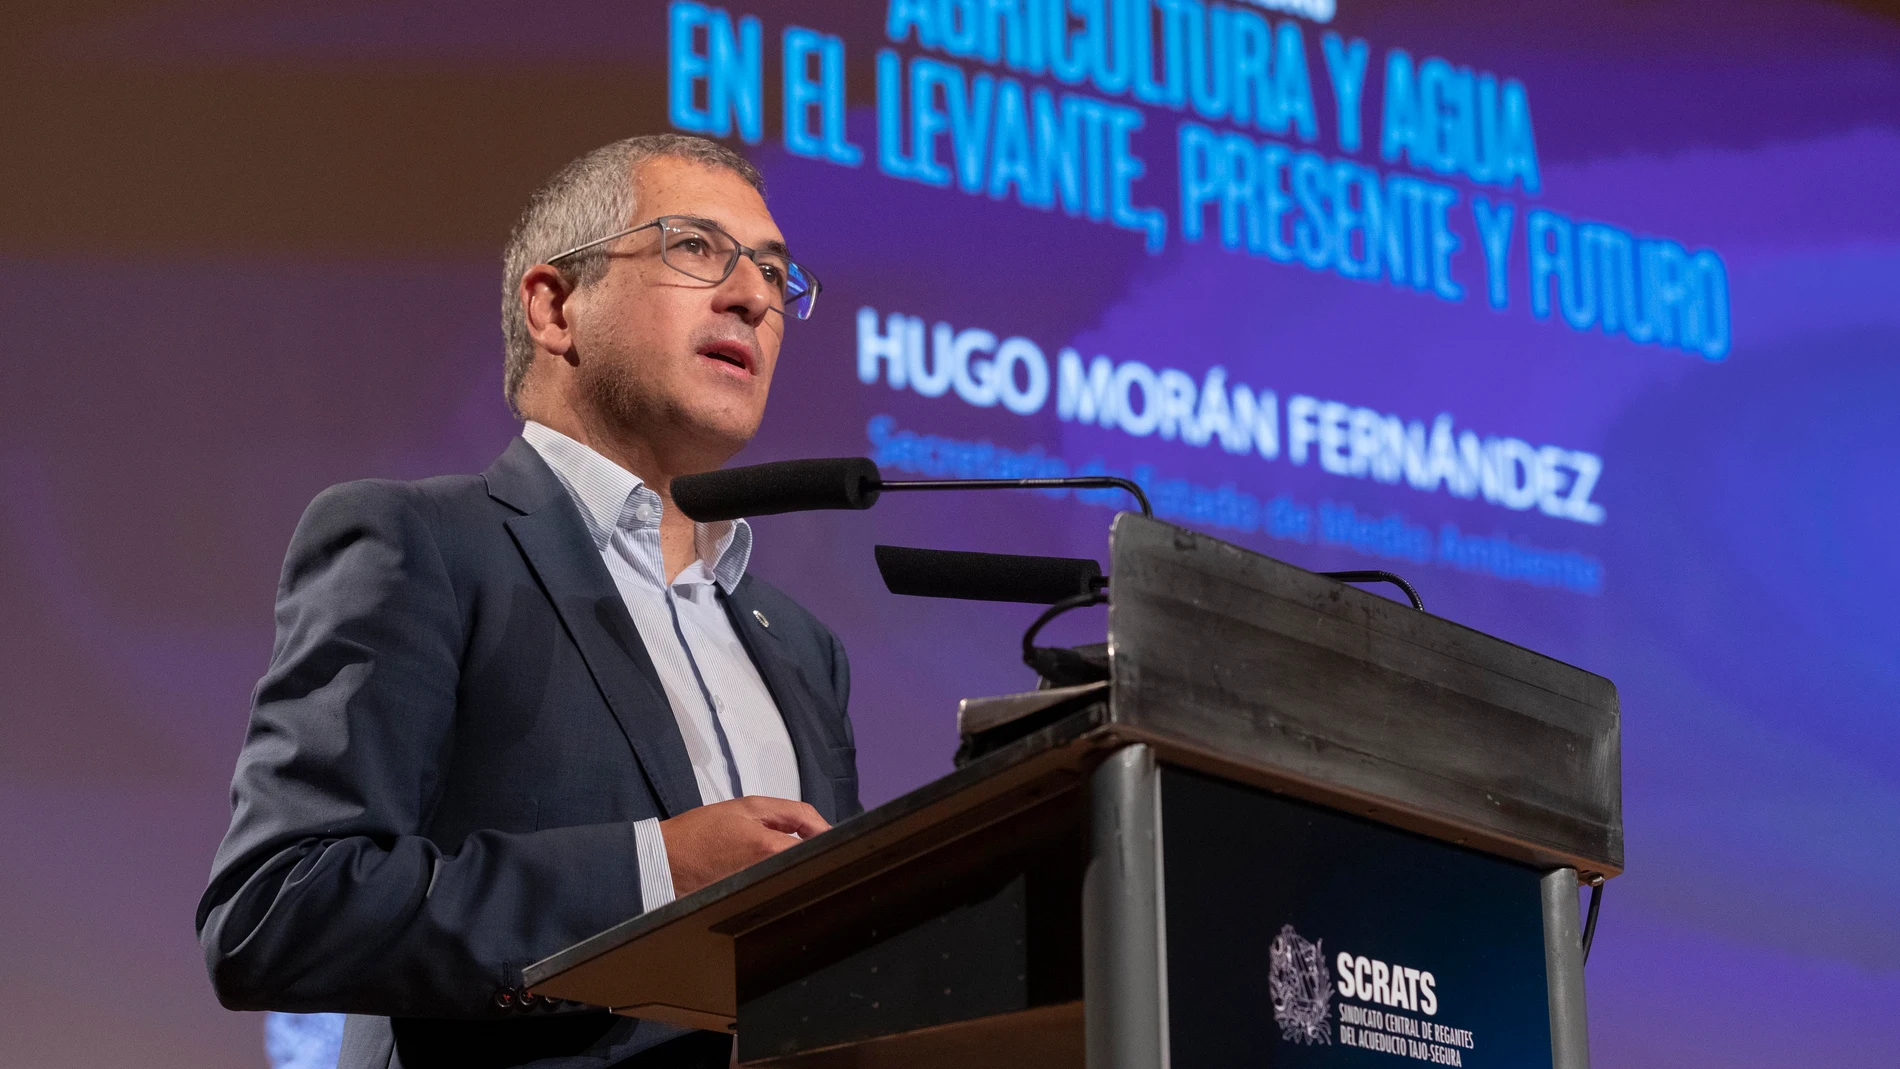 El secretario de Estado de Medio Ambiente, Hugo Morán, durante un momento de su intervención en las jornadas sobre Agricultura y Agua en el Levante, Presente y Futuro